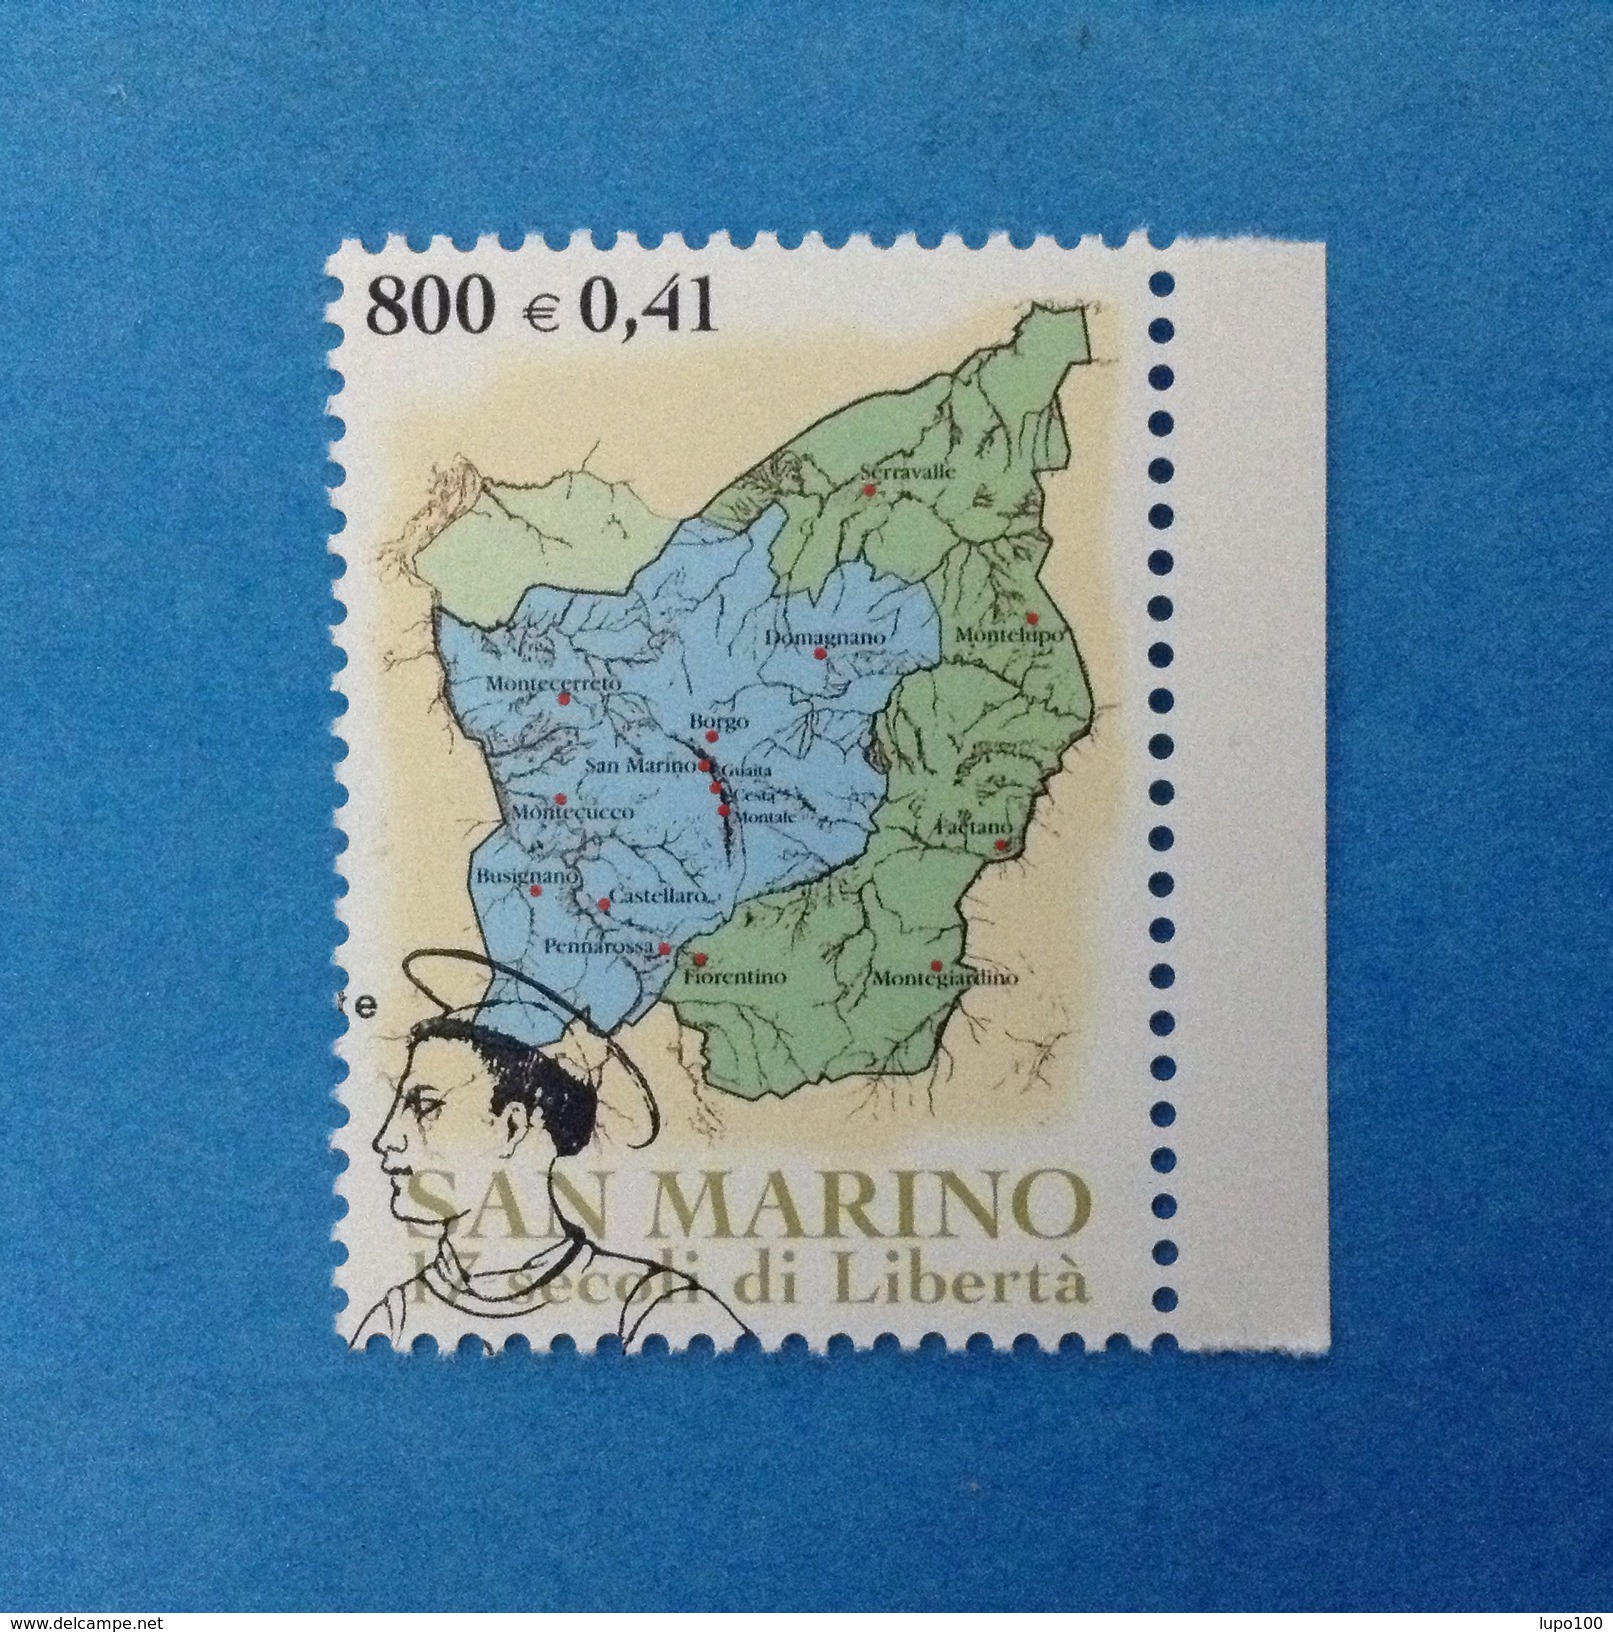 2000 SAN MARINO FRANCOBOLLO USATO STAMP USED - Fondazione Repubblica Territorio 0,41- - Gebraucht